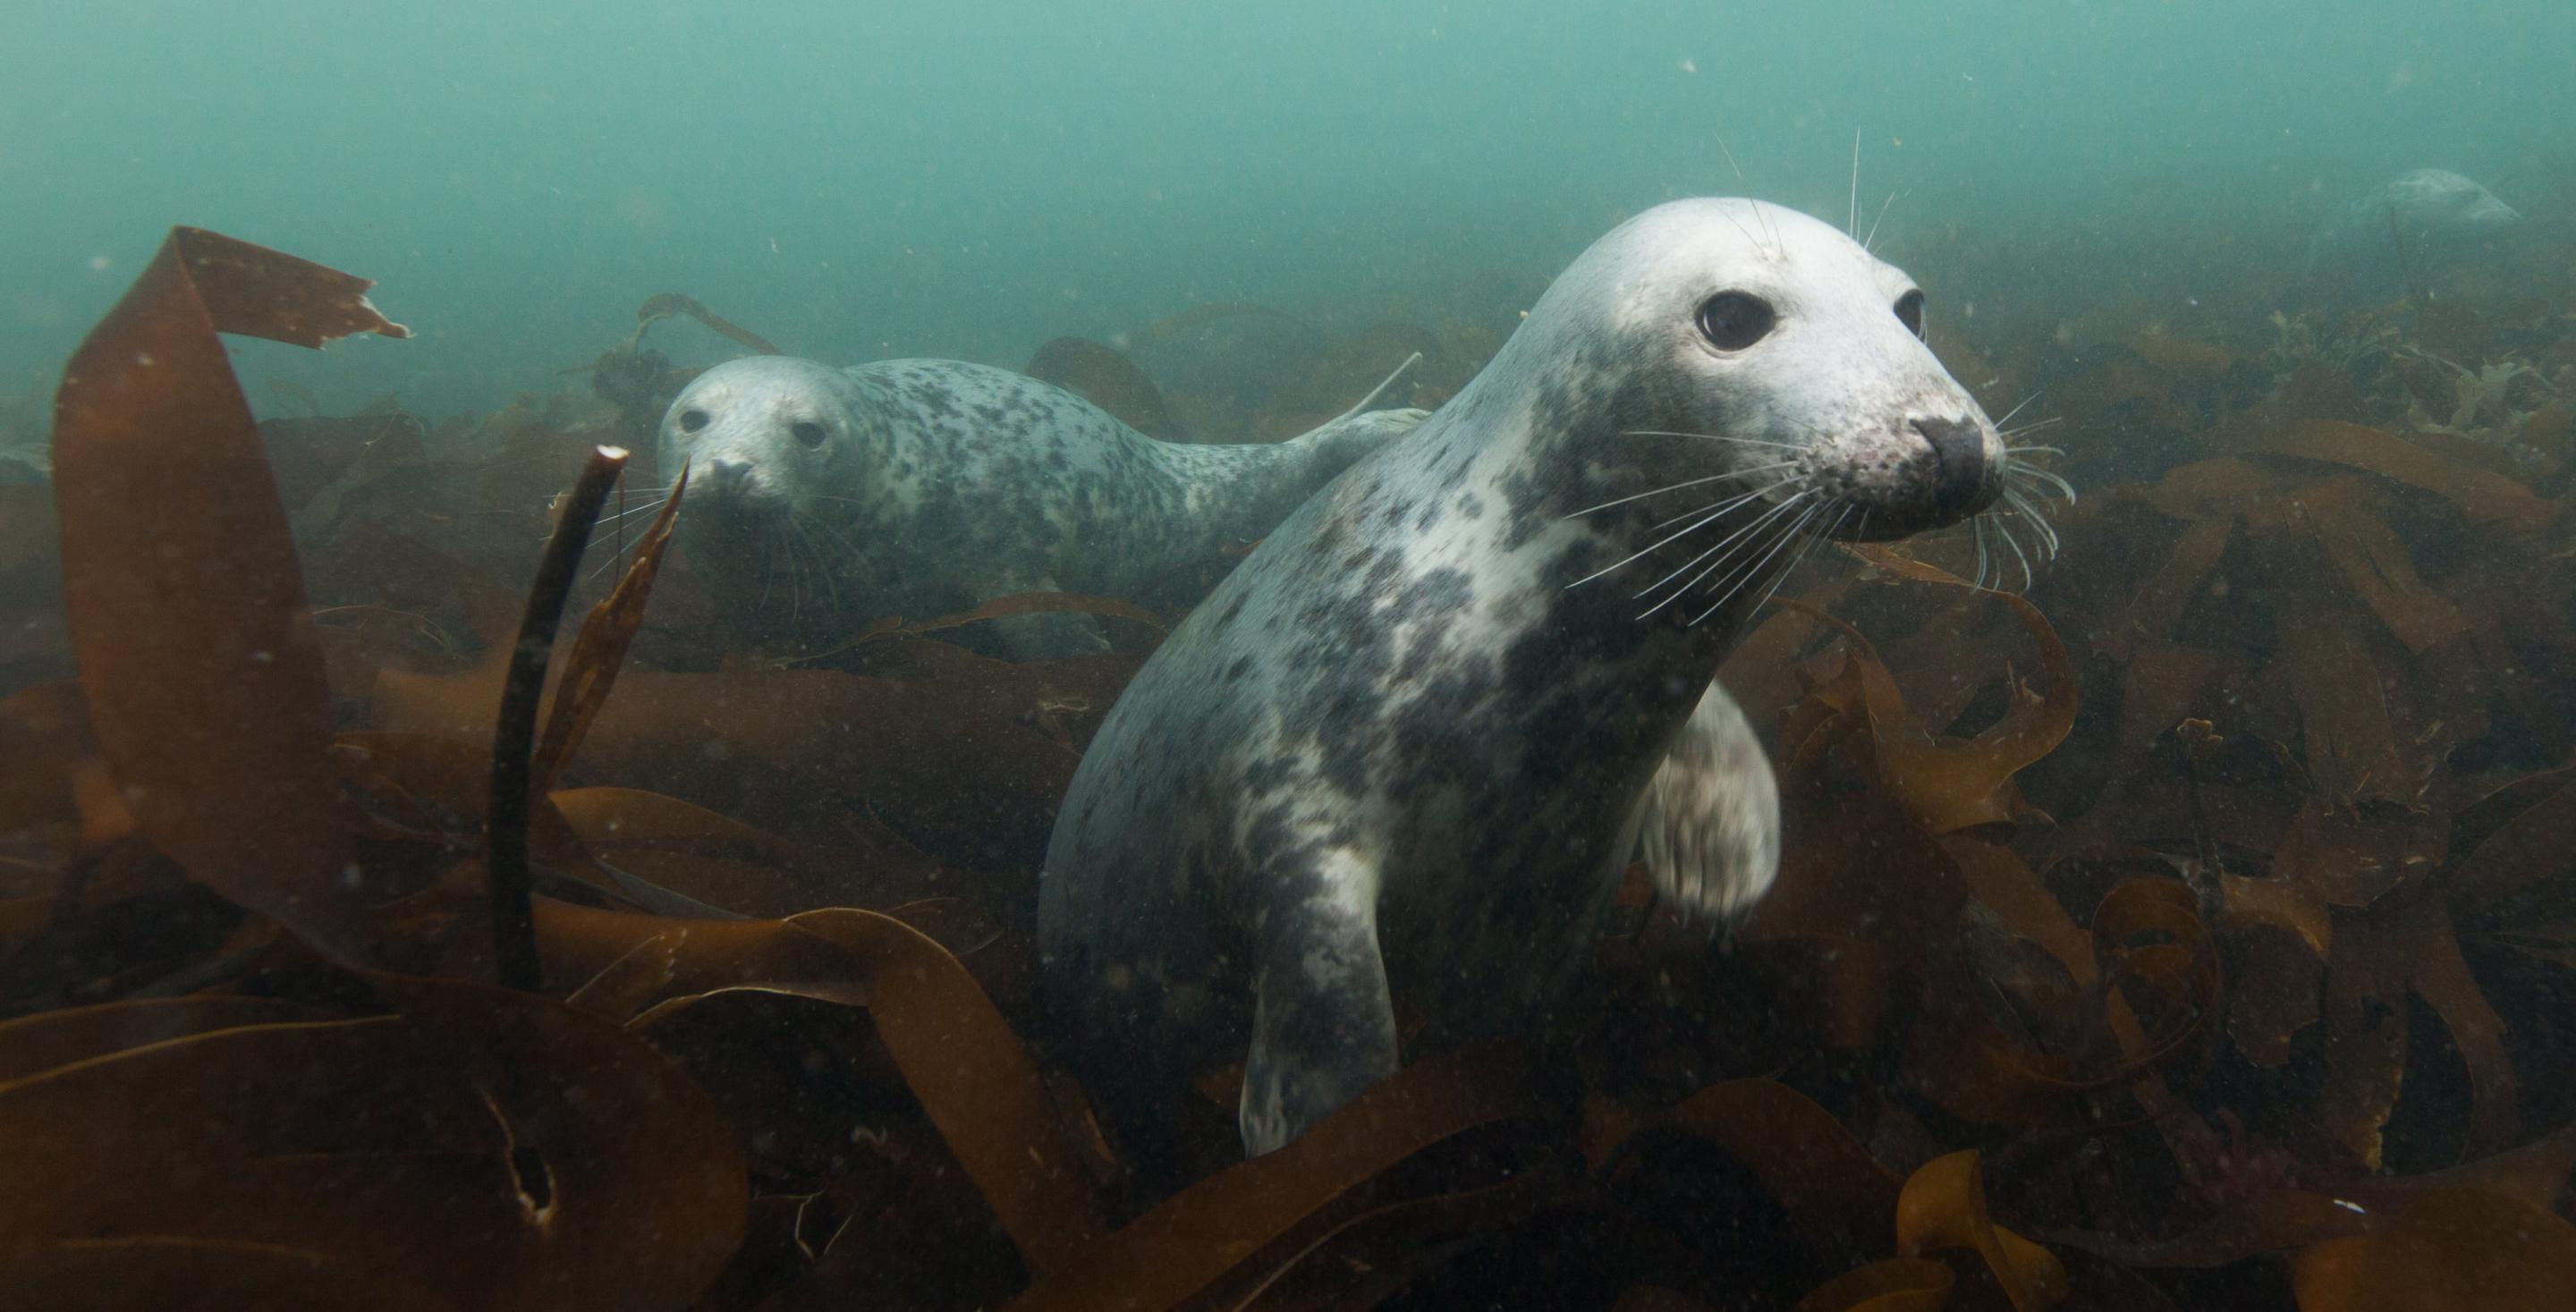 Plongée avec les phoques - Zone protégée depuis 1945, les îles de Farnes abritent une colonie particulièrement importante de phoques (Phoca vitulina) - Angleterre